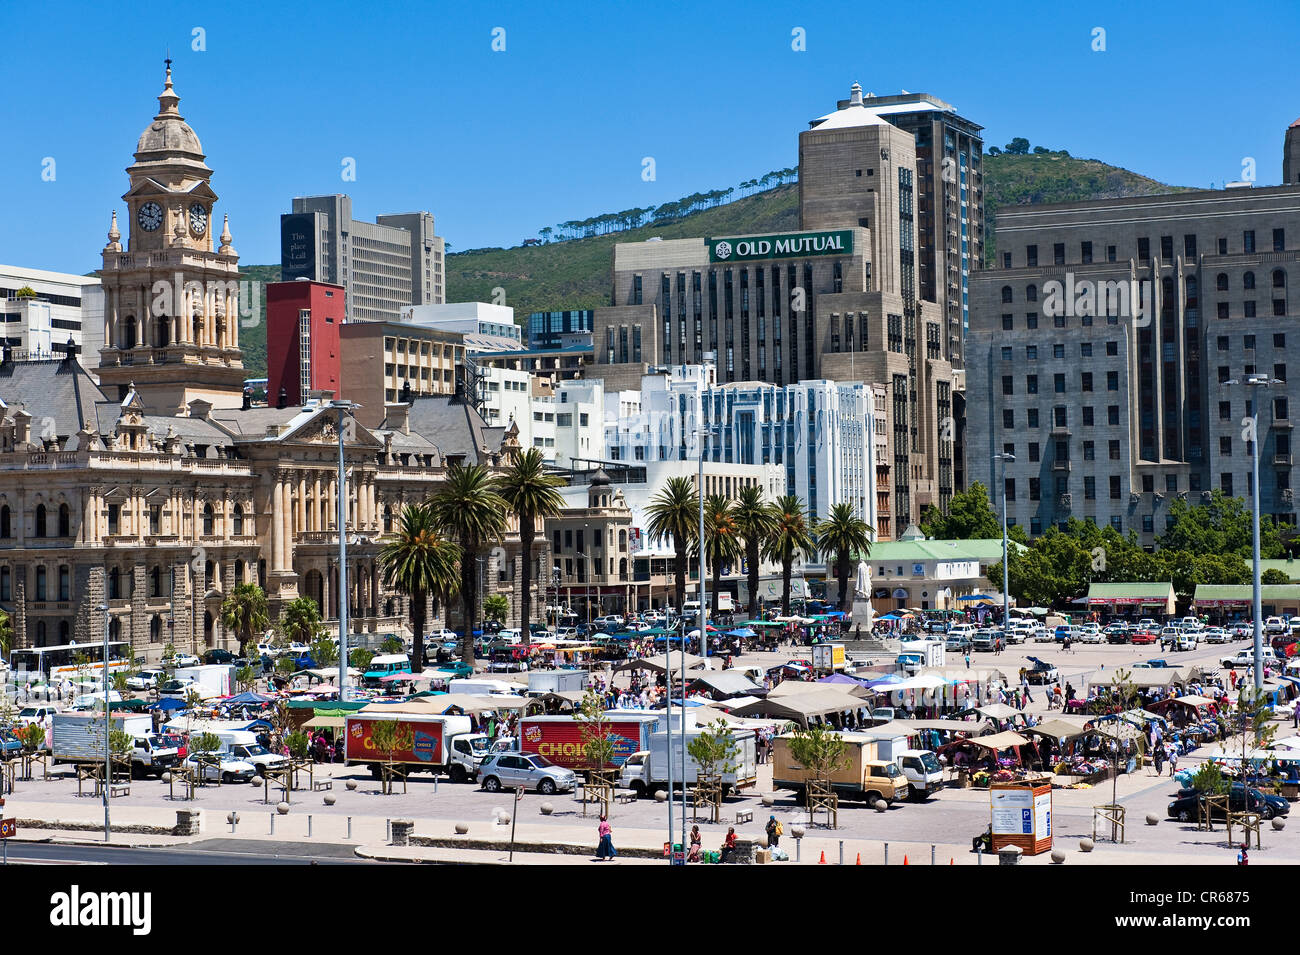 L'Afrique du Sud, Western Cape, Cape Town, le quartier de City Bowl, square de la place Grand Parade. Banque D'Images